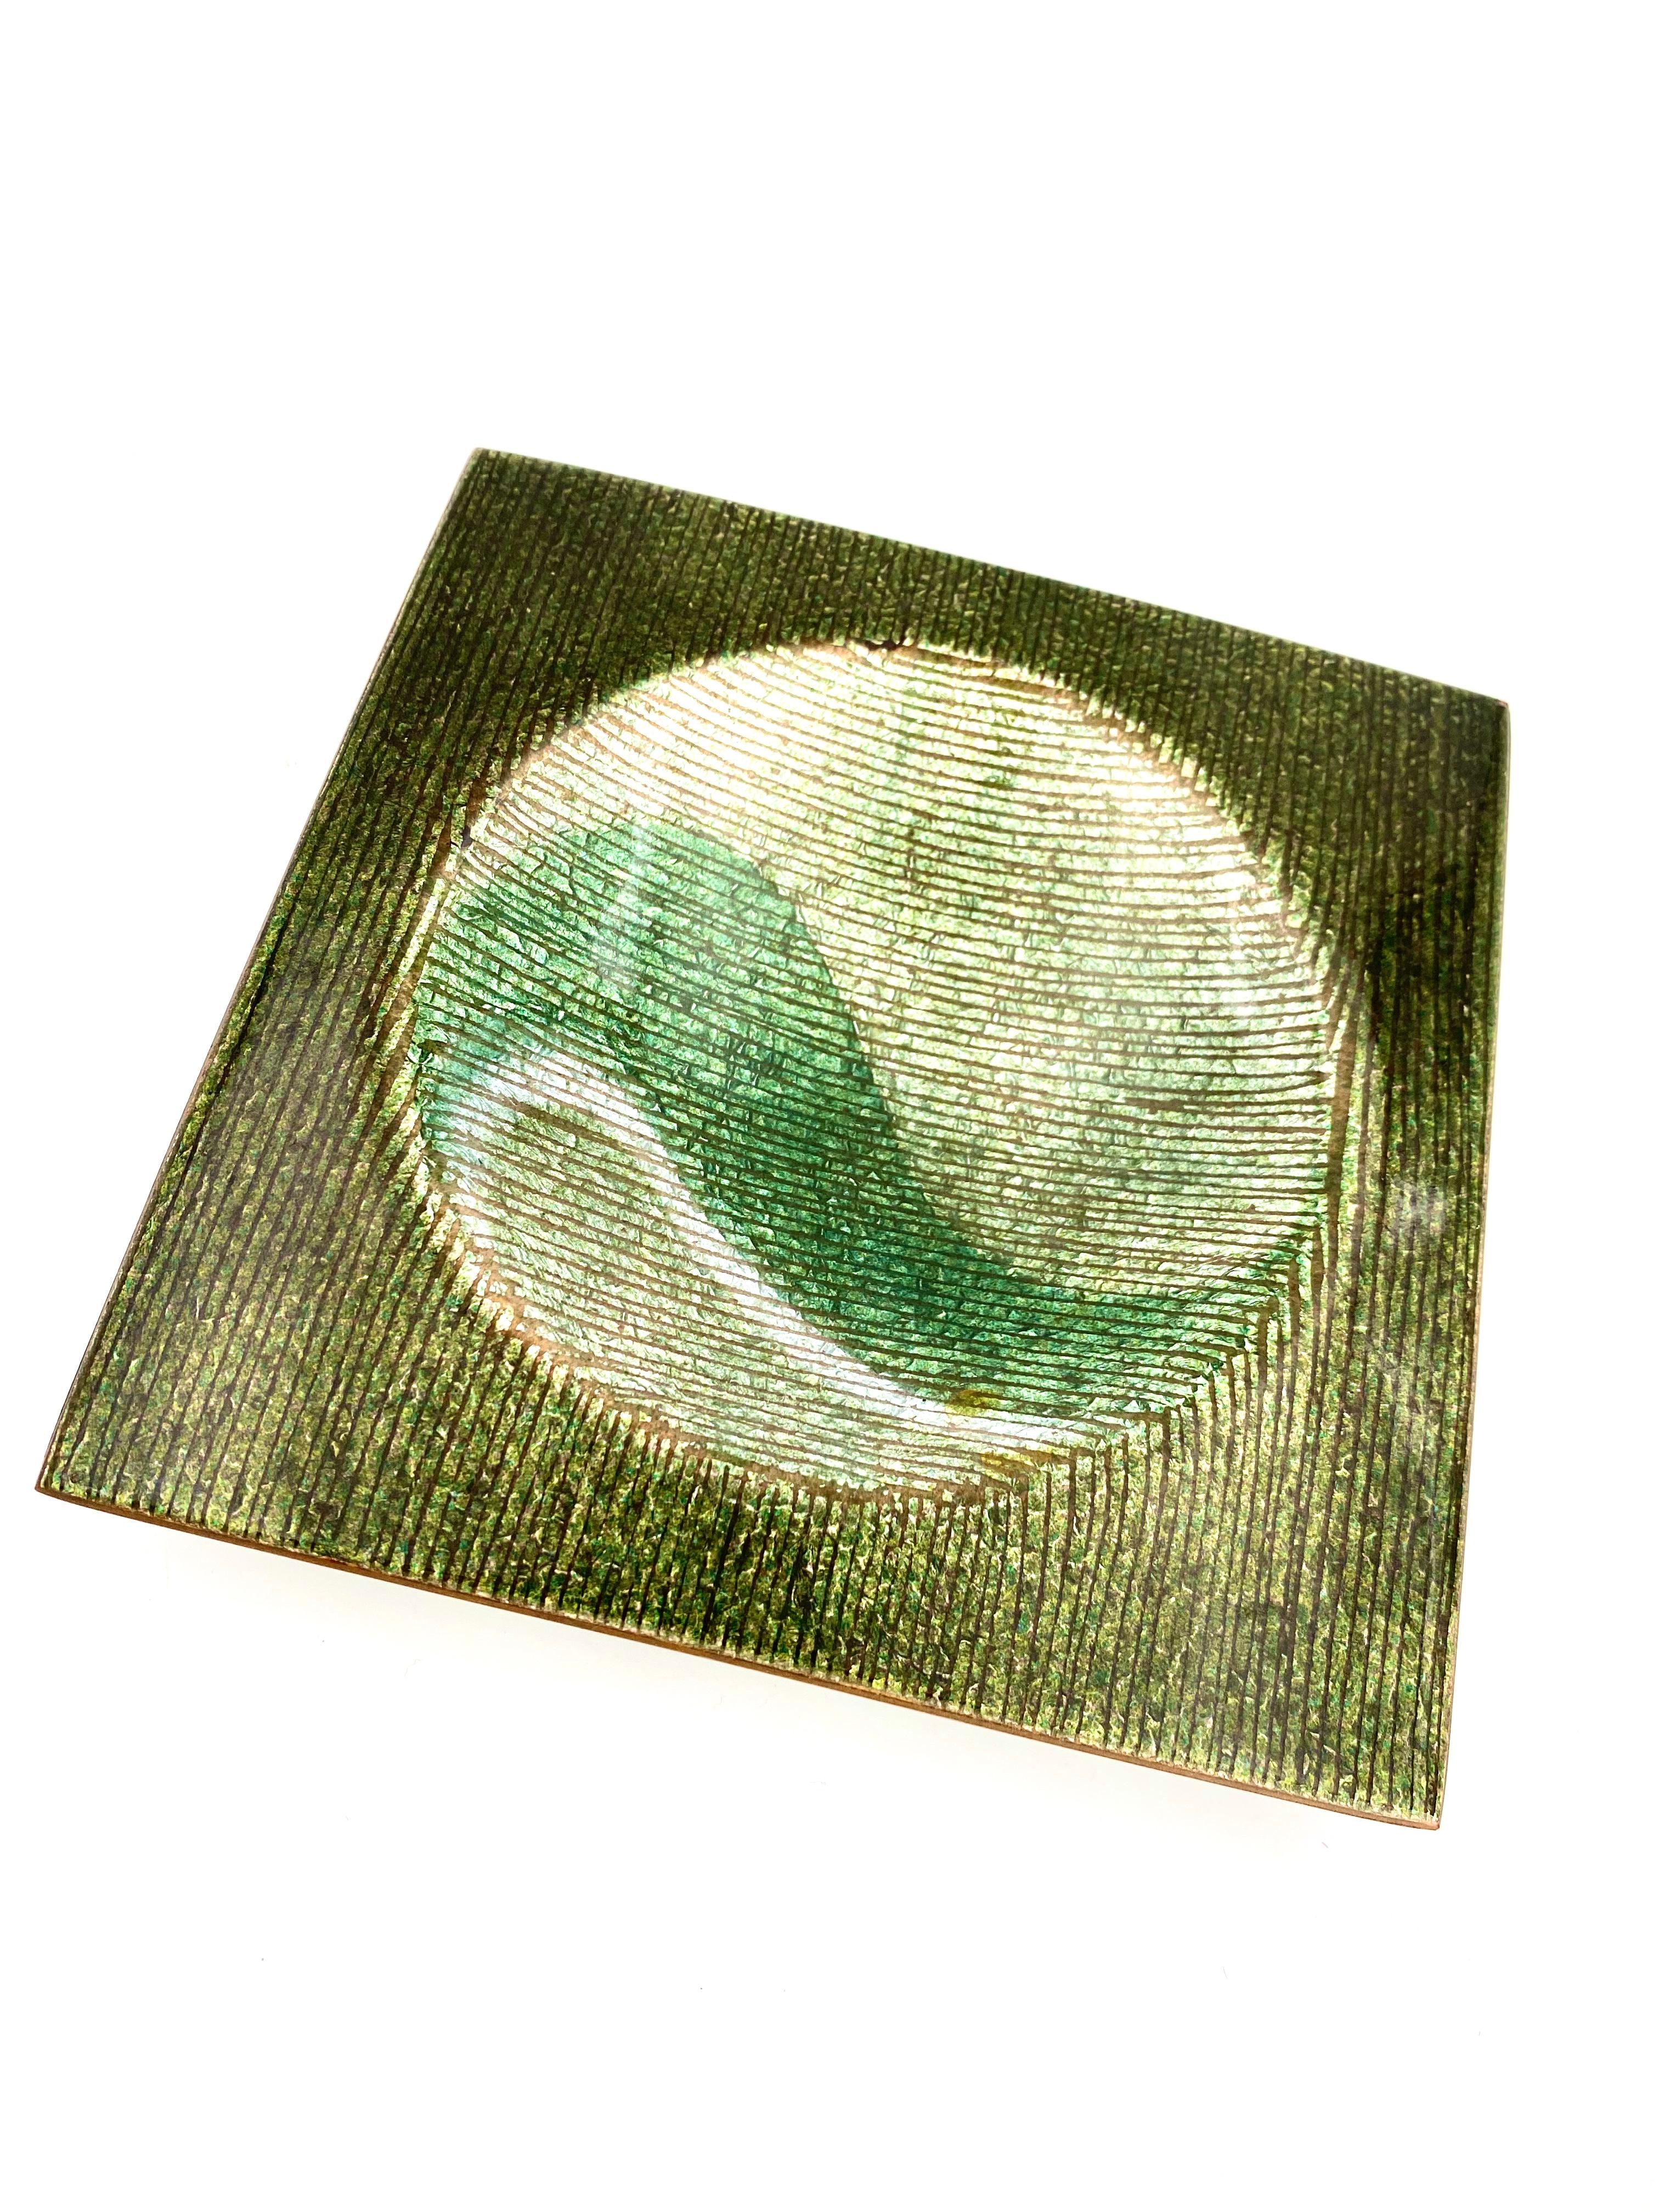 Studio Del Campo Kupfer Tablett emailliert in grün. 

Del Campo, Turin, um 1970.  

Entworfen von Gio Ponti

Signiert auf der Unterseite: [Del Campo] 

16,5 x 16,5 x 4 cm

Bedingungen: ausgezeichnet, keine Chips.